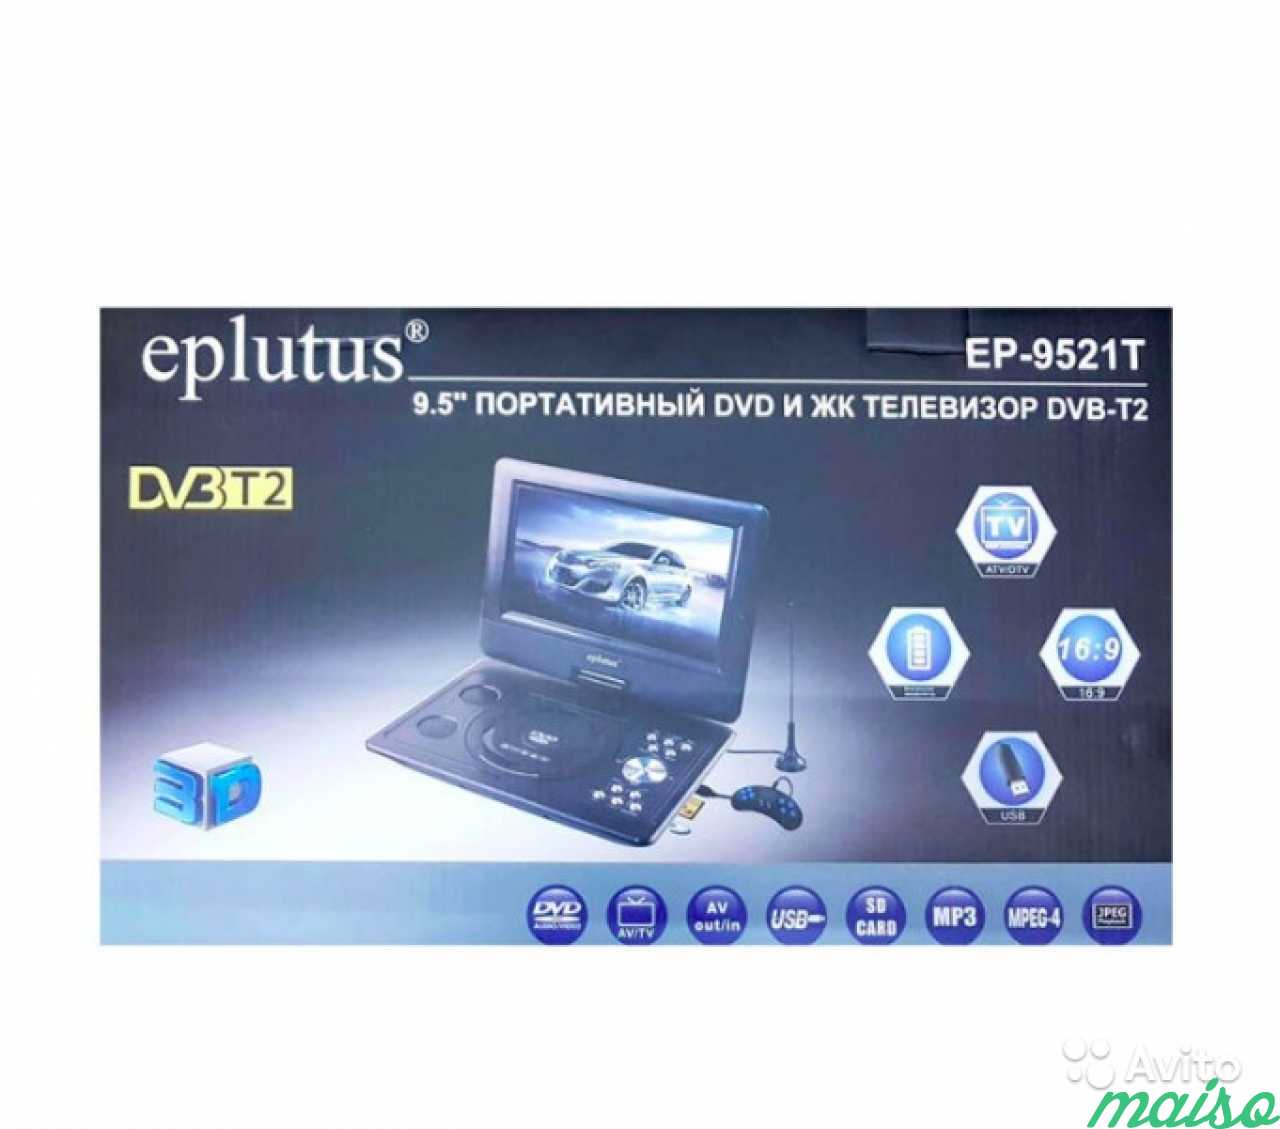 Портативный DVD плеер EP-9521T Eplutus в Санкт-Петербурге. Фото 2